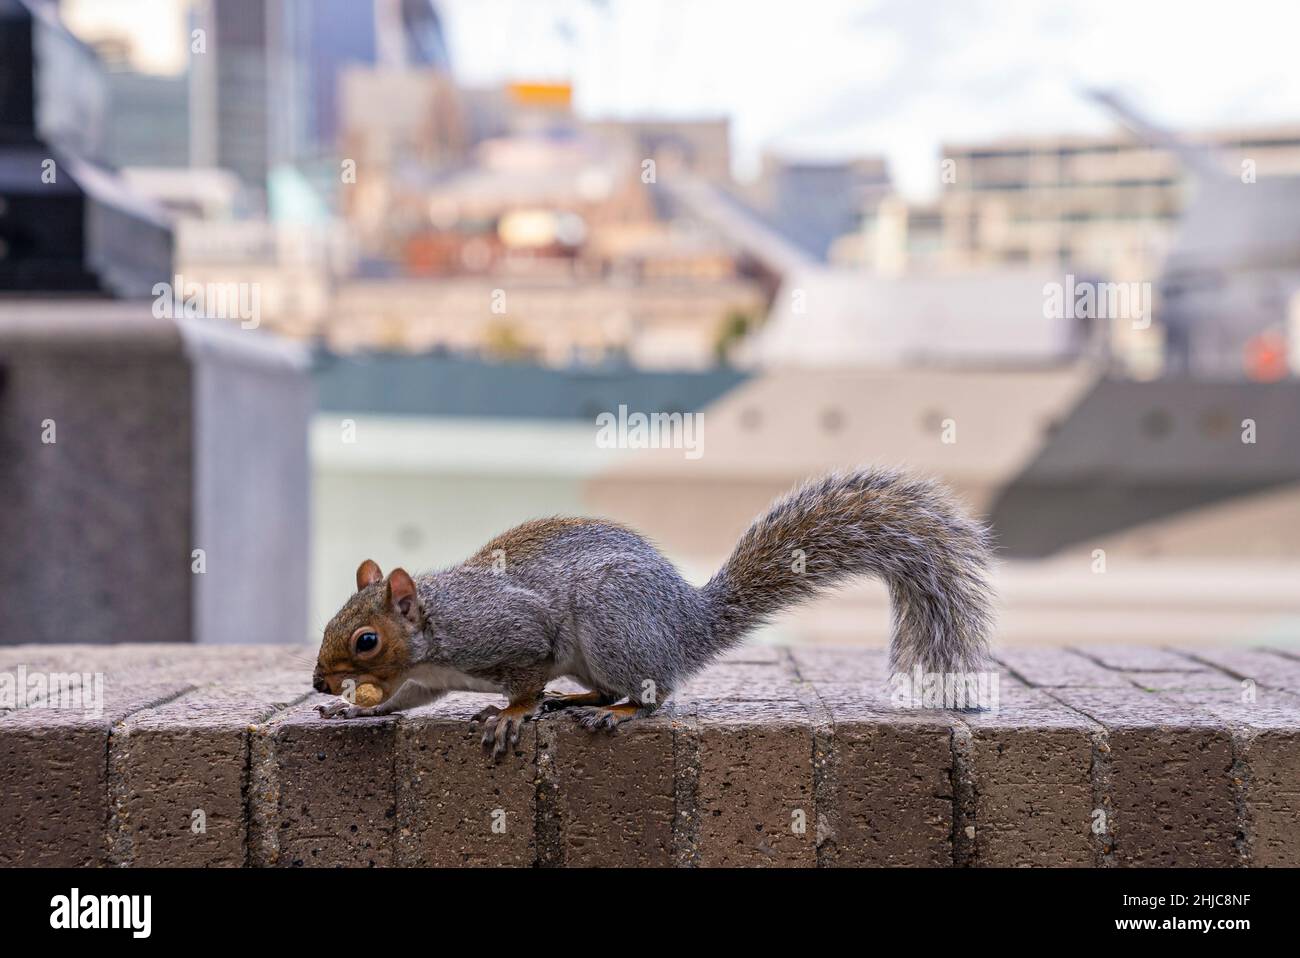 Carino piccolo scoiattolo gnaws nut mentre perching sul muro circostante Foto Stock